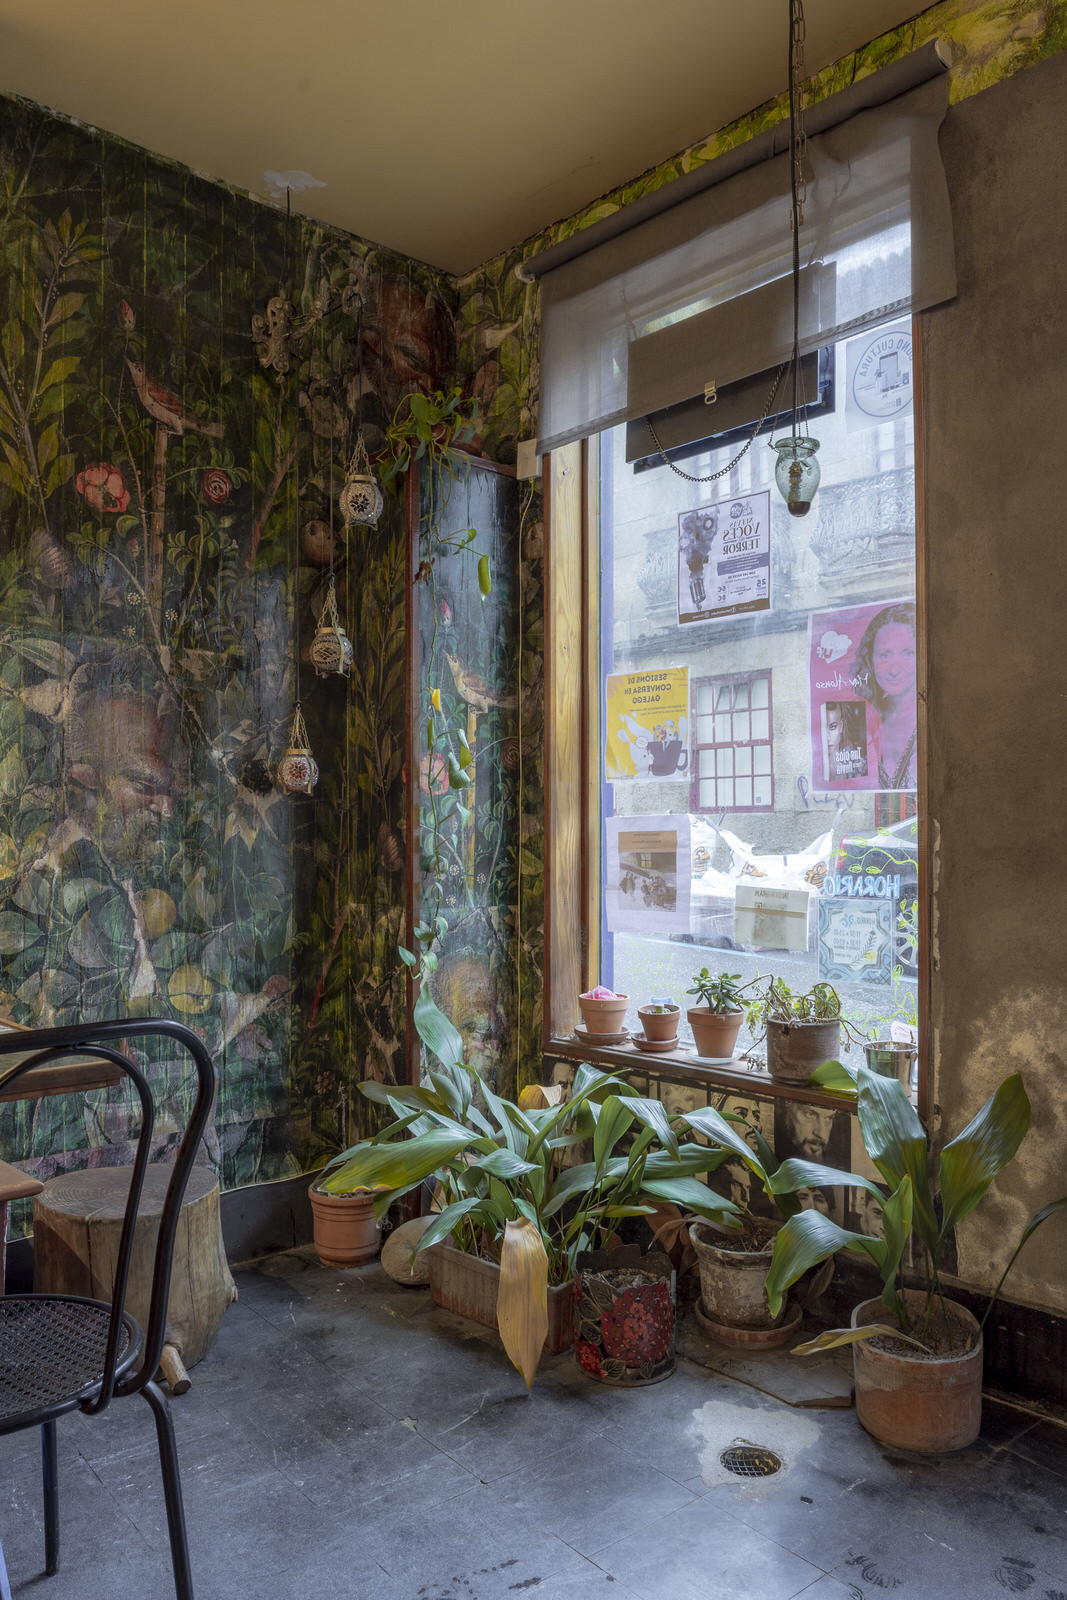 Imagen del interior de la cafetería, con un ventanal, plantas y una pared pintada de flores